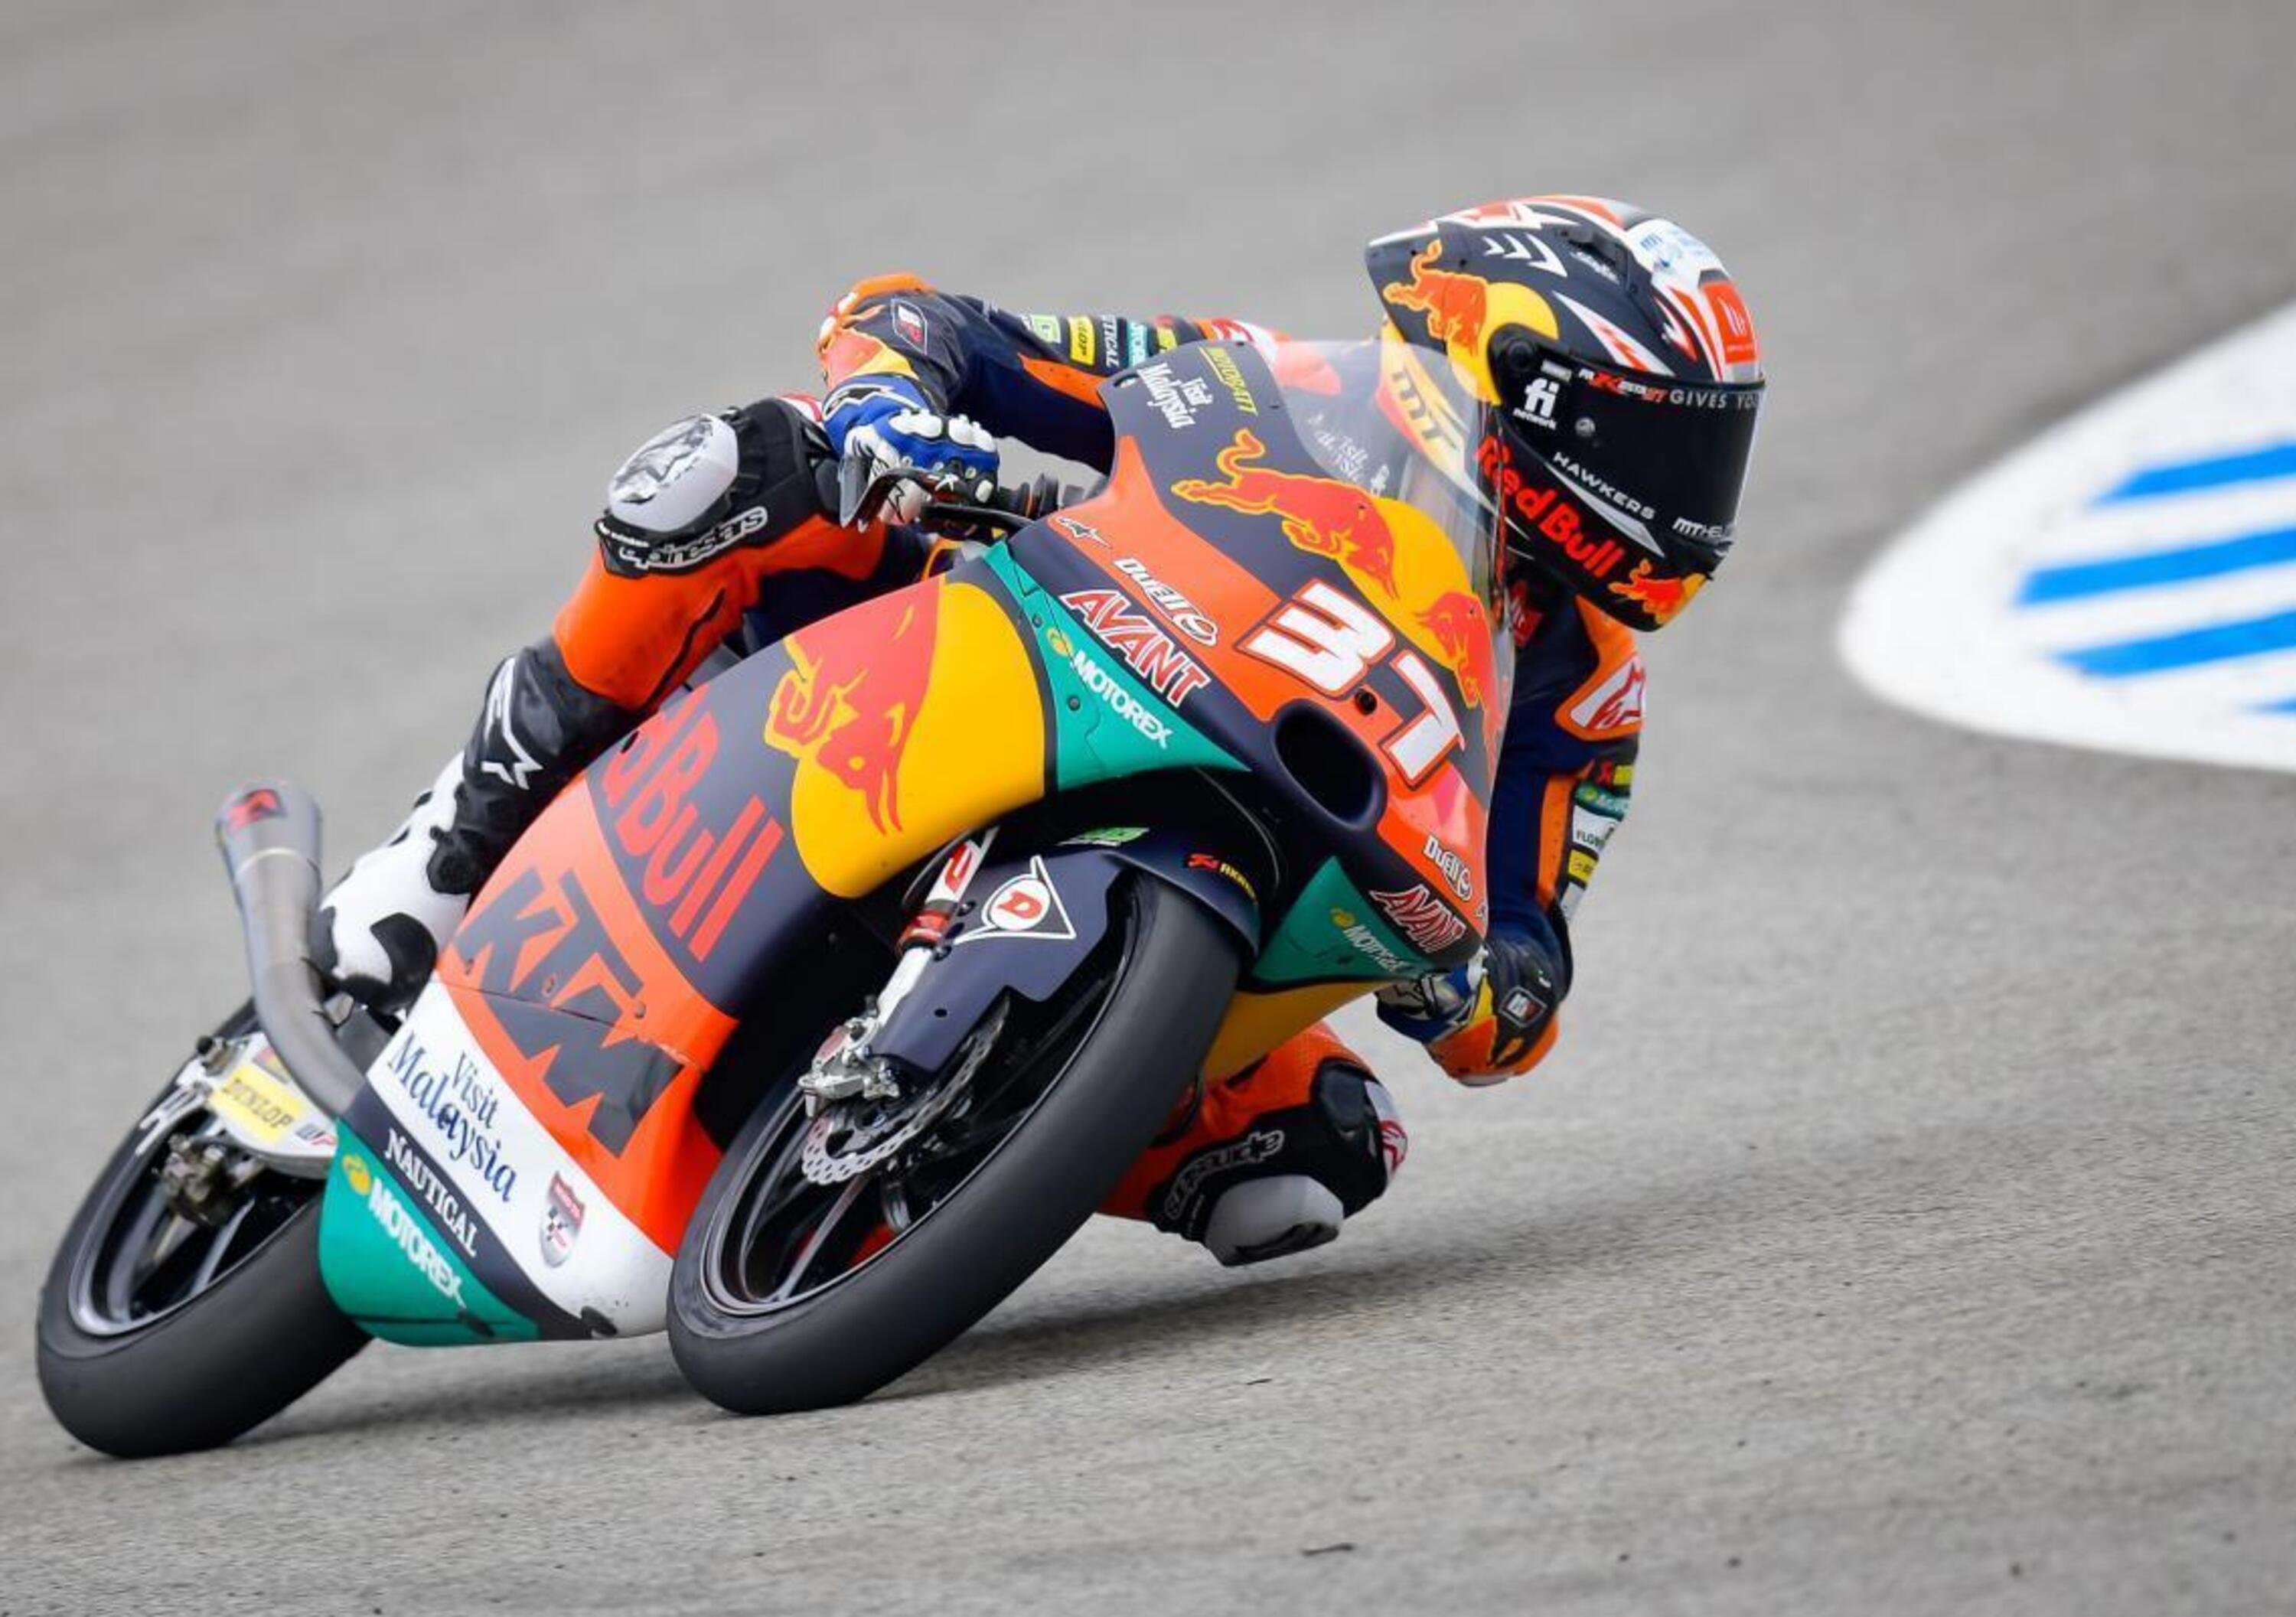 MotoGP 2021, GP di Spagna a Jerez. Pedro Acosta vince in Moto3, Fabio Di Giannantonio in Moto2